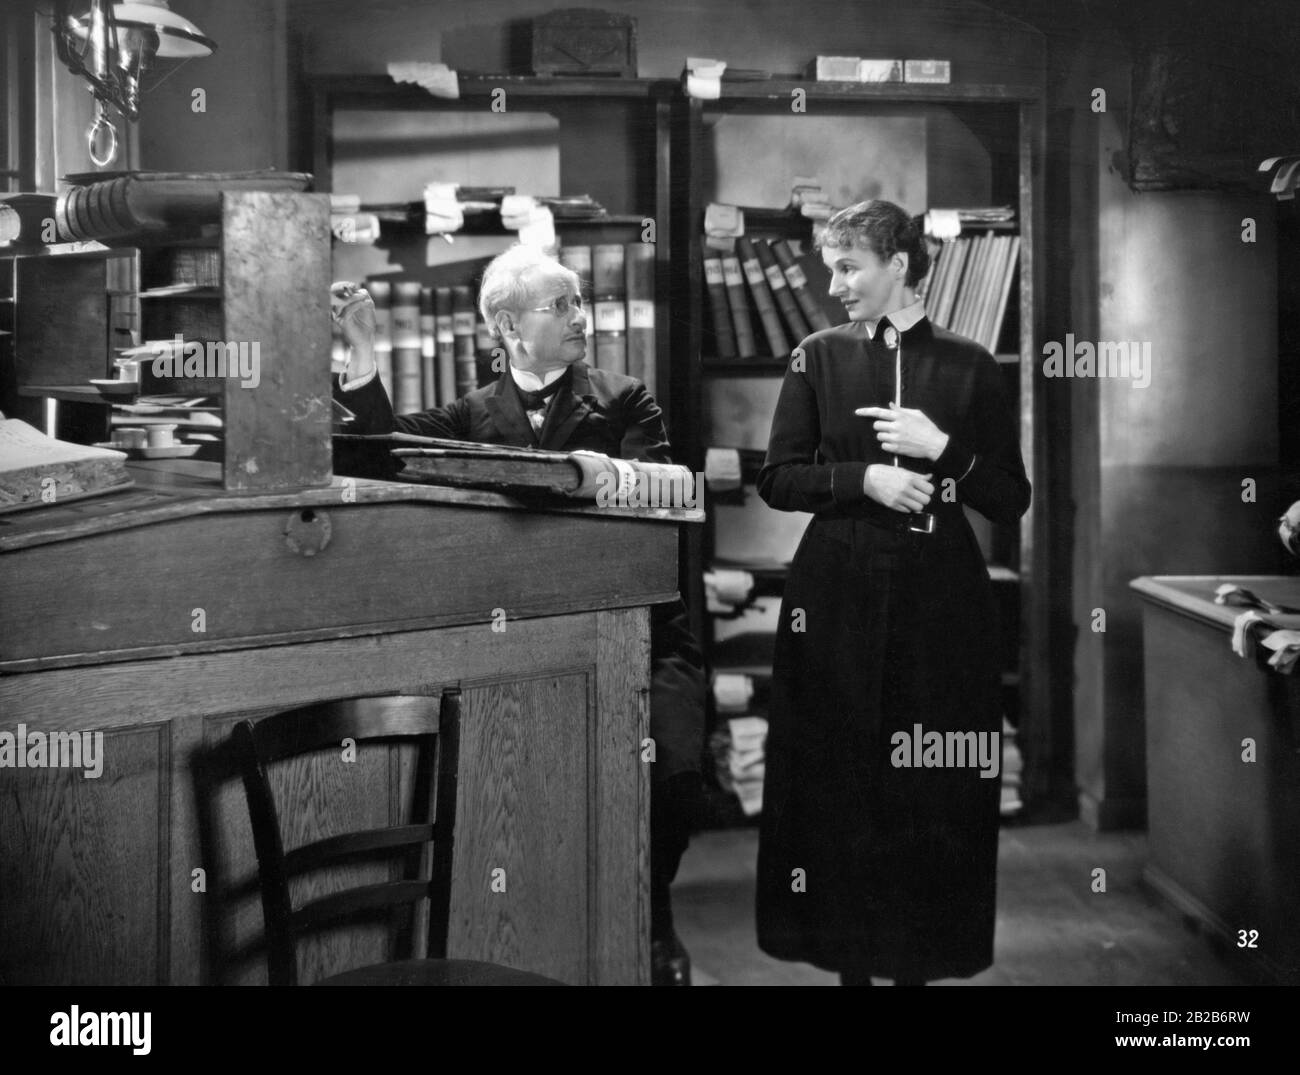 Les employés de bureau dans un bureau meublé dans le style de l'époque avec des bureaux hauts. Banque D'Images